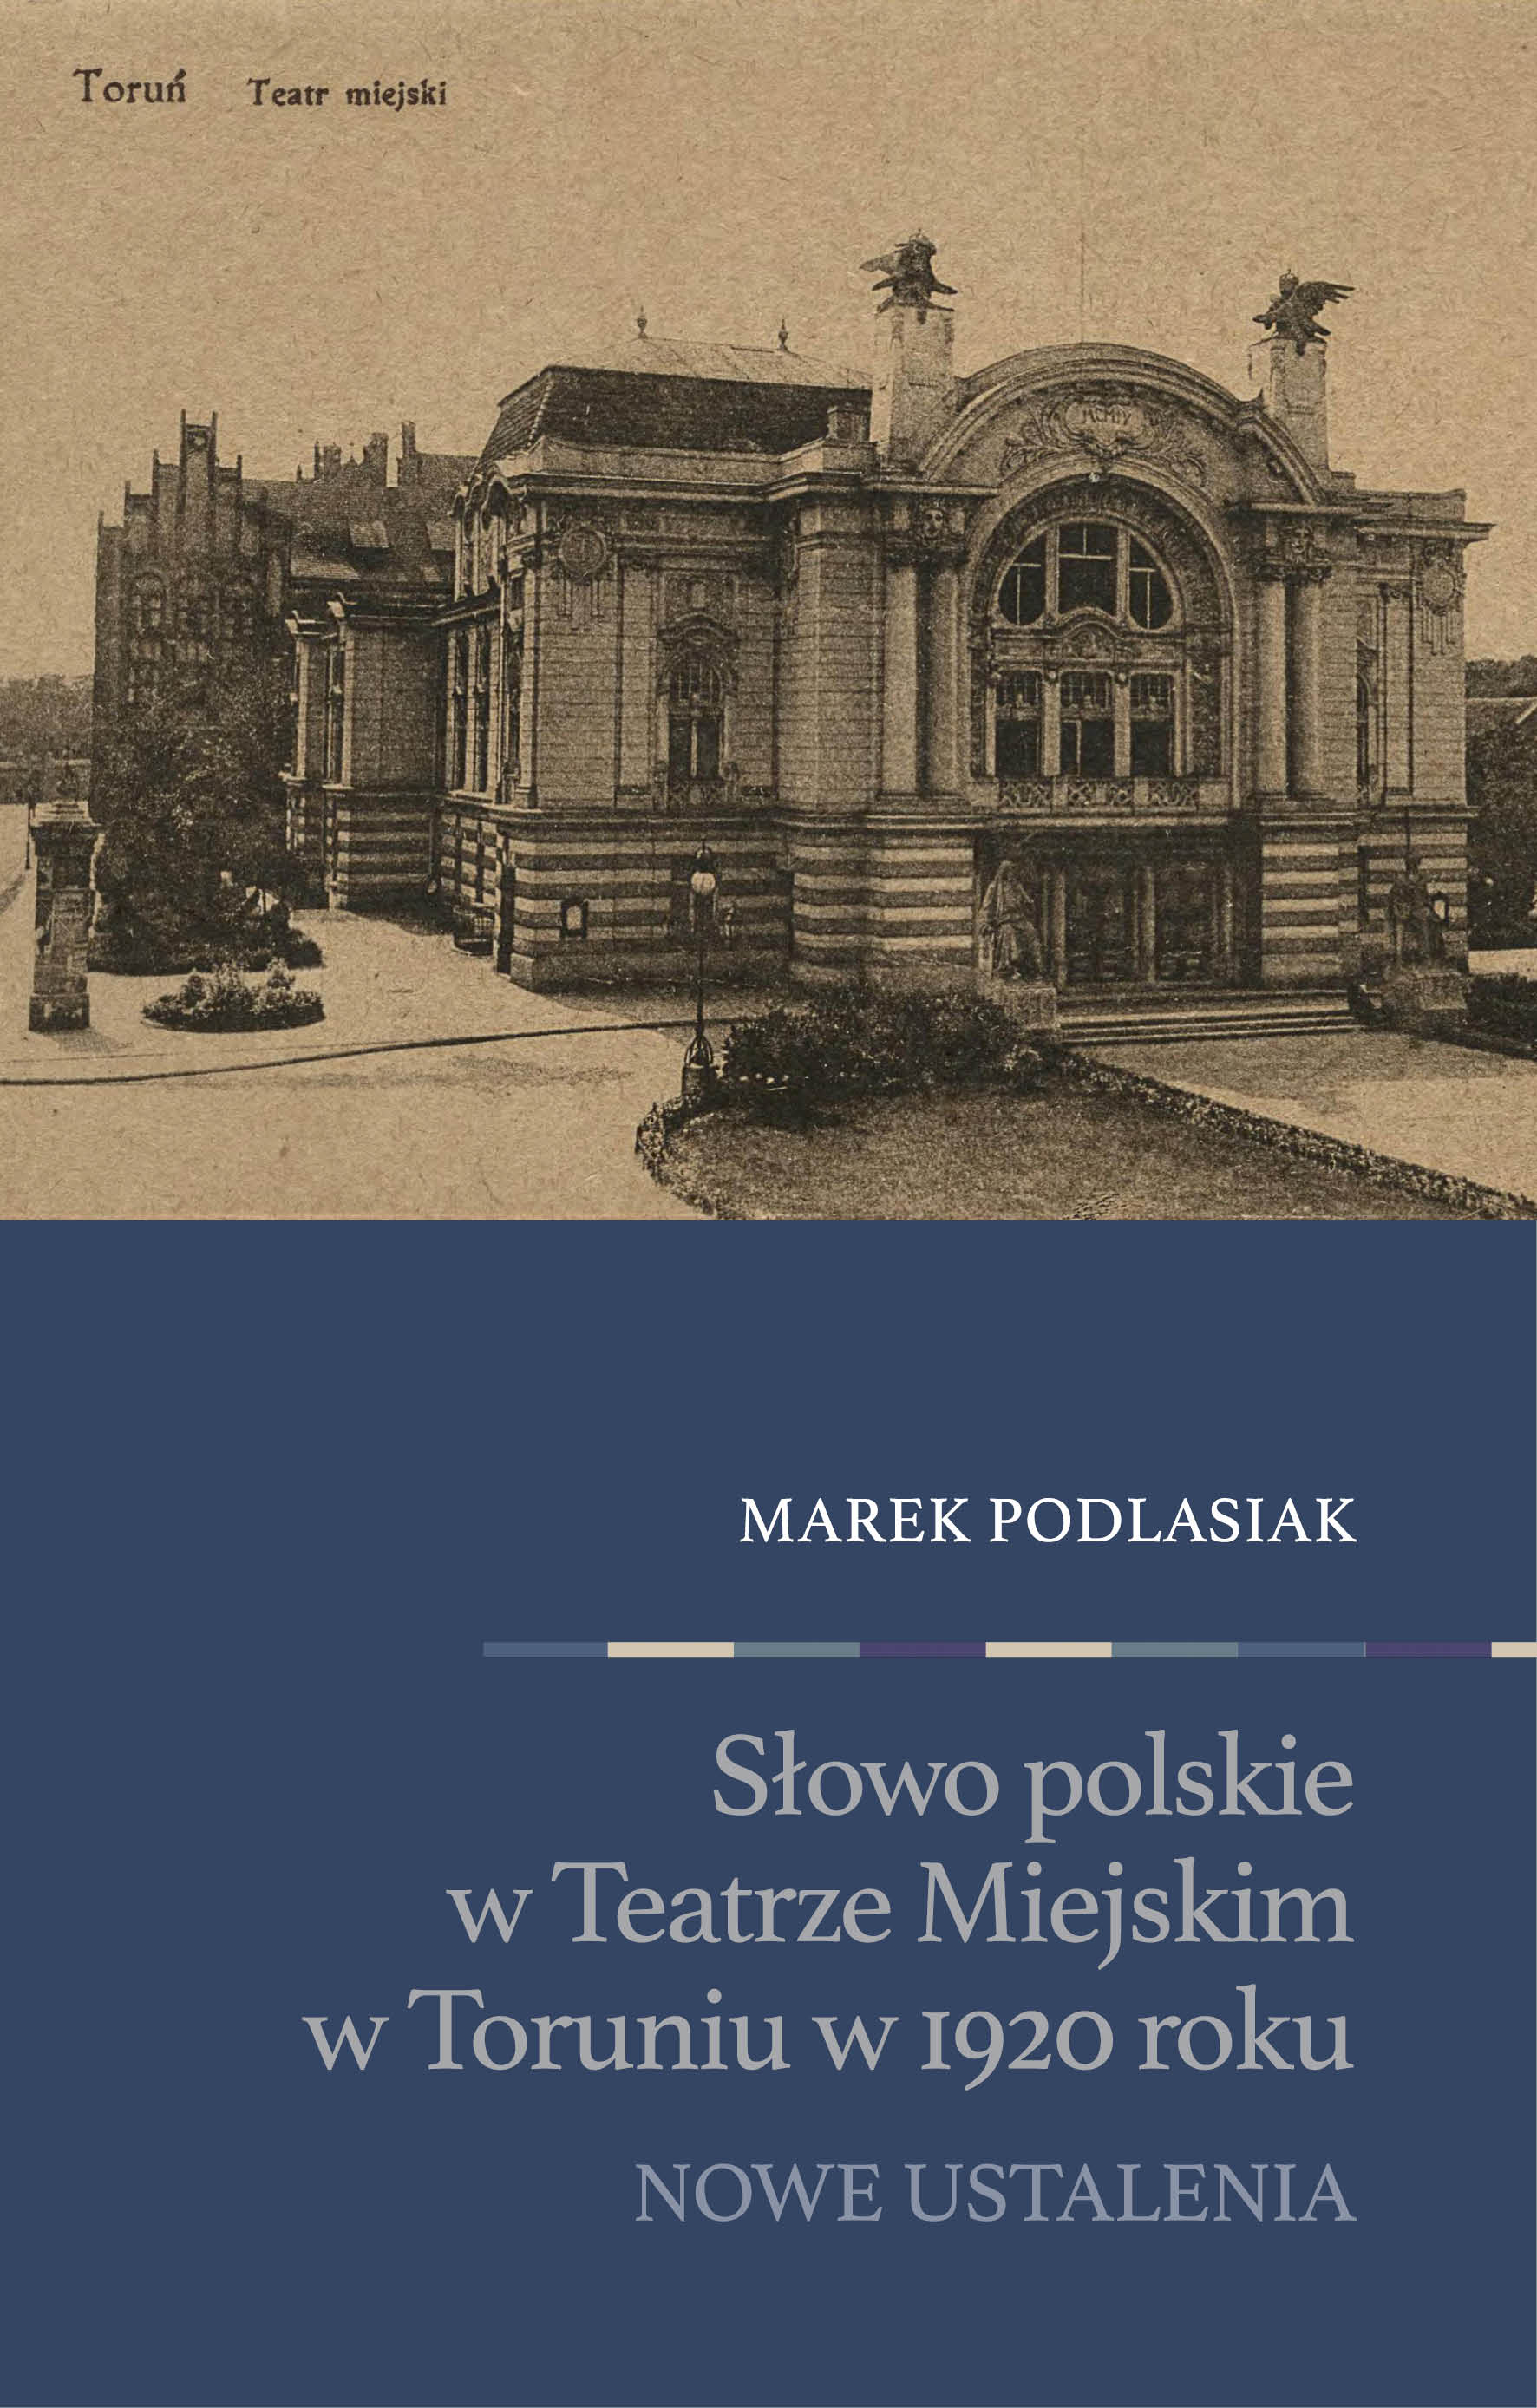 Słowo polskie  w Teatrze Miejskim  w Toruniu w 1920 roku. Nowe ustalenia